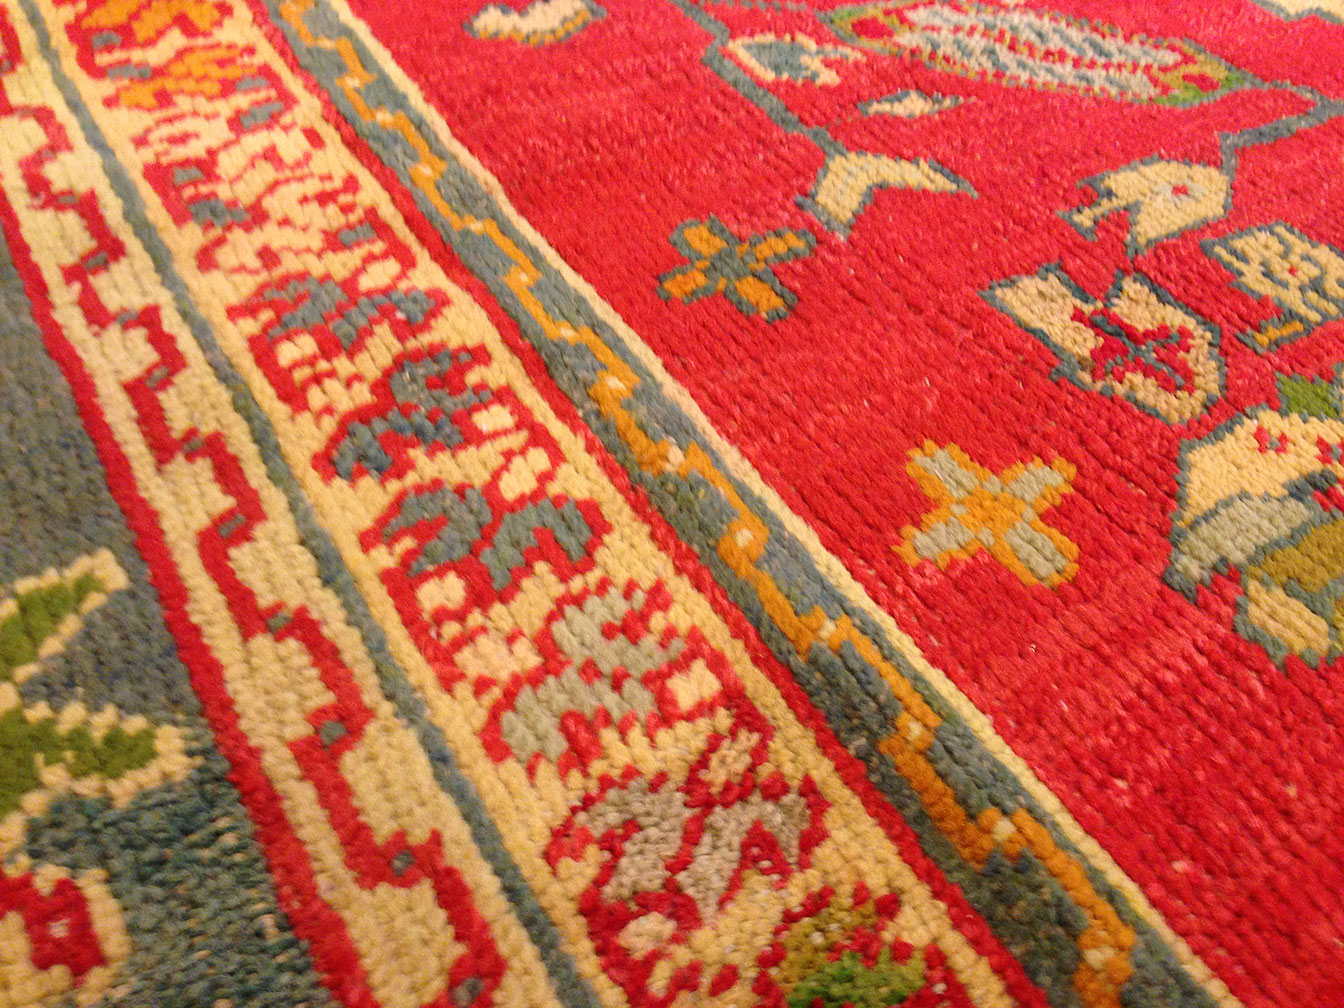 Antique oushak Carpet - # 9011